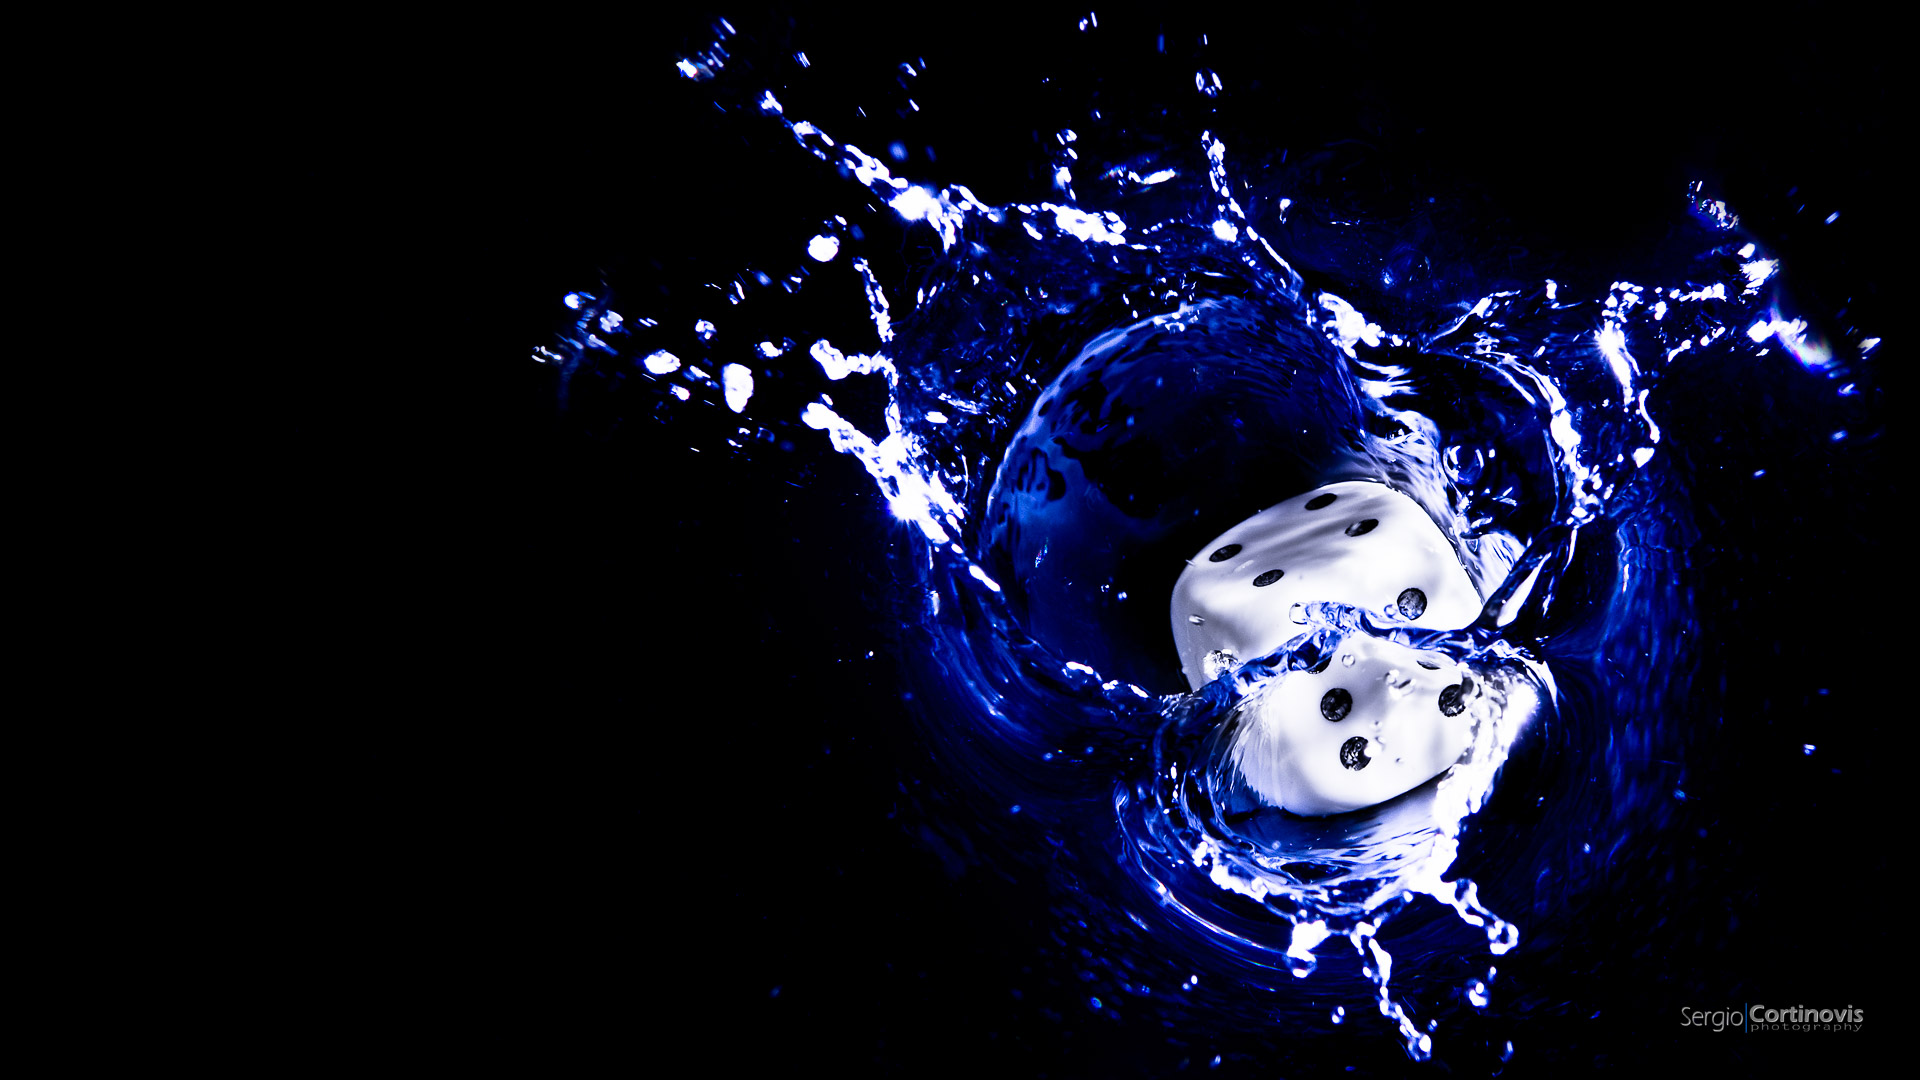 Un dado bianco cade nell'acqua resa nera tramite l'utilizzo del flash